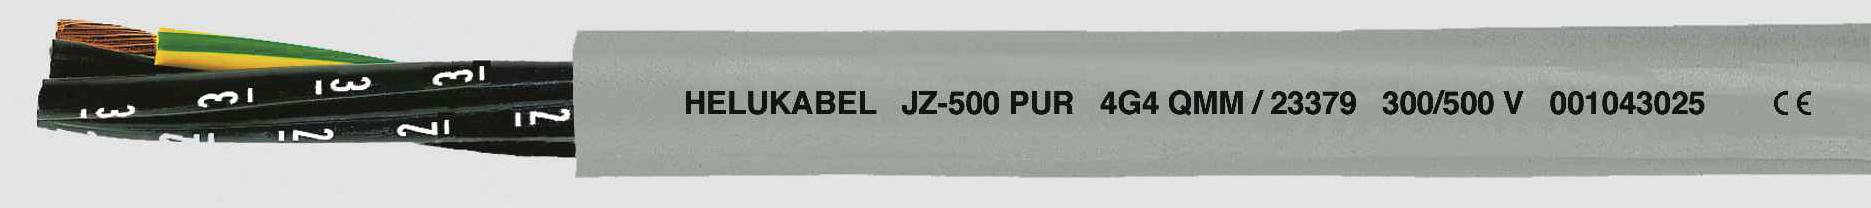 HELUKABEL JZ-500 PUR Steuerleitung 3 G 0.50 mm² Grau 23315 100 m